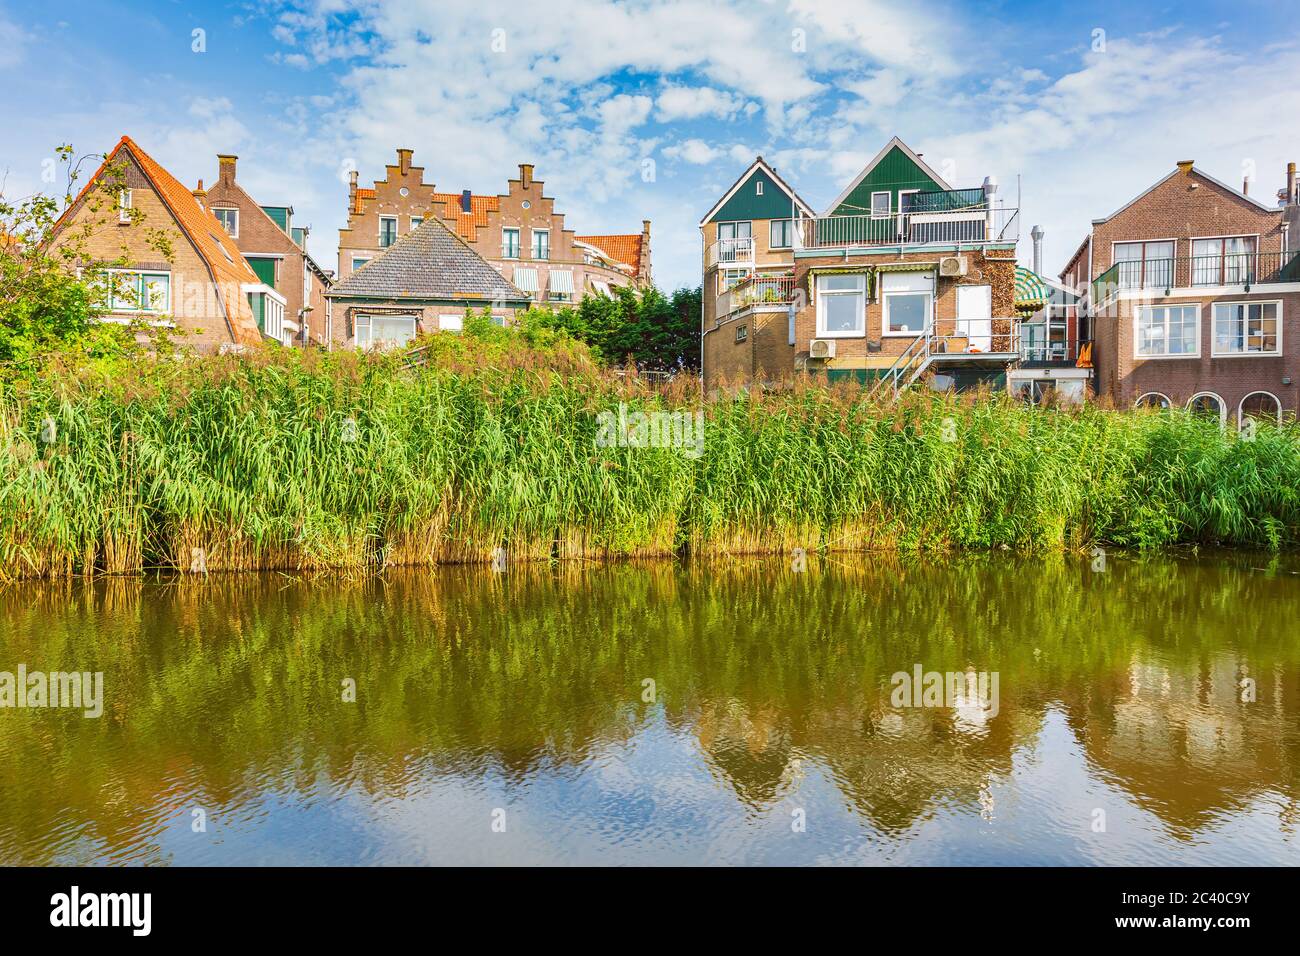 Vecchie strade di Volendam. Il vecchio villaggio tradizionale di pescatori, tipiche case in legno architettura. Famoso punto di riferimento e meta di viaggio per i turisti. Foto Stock